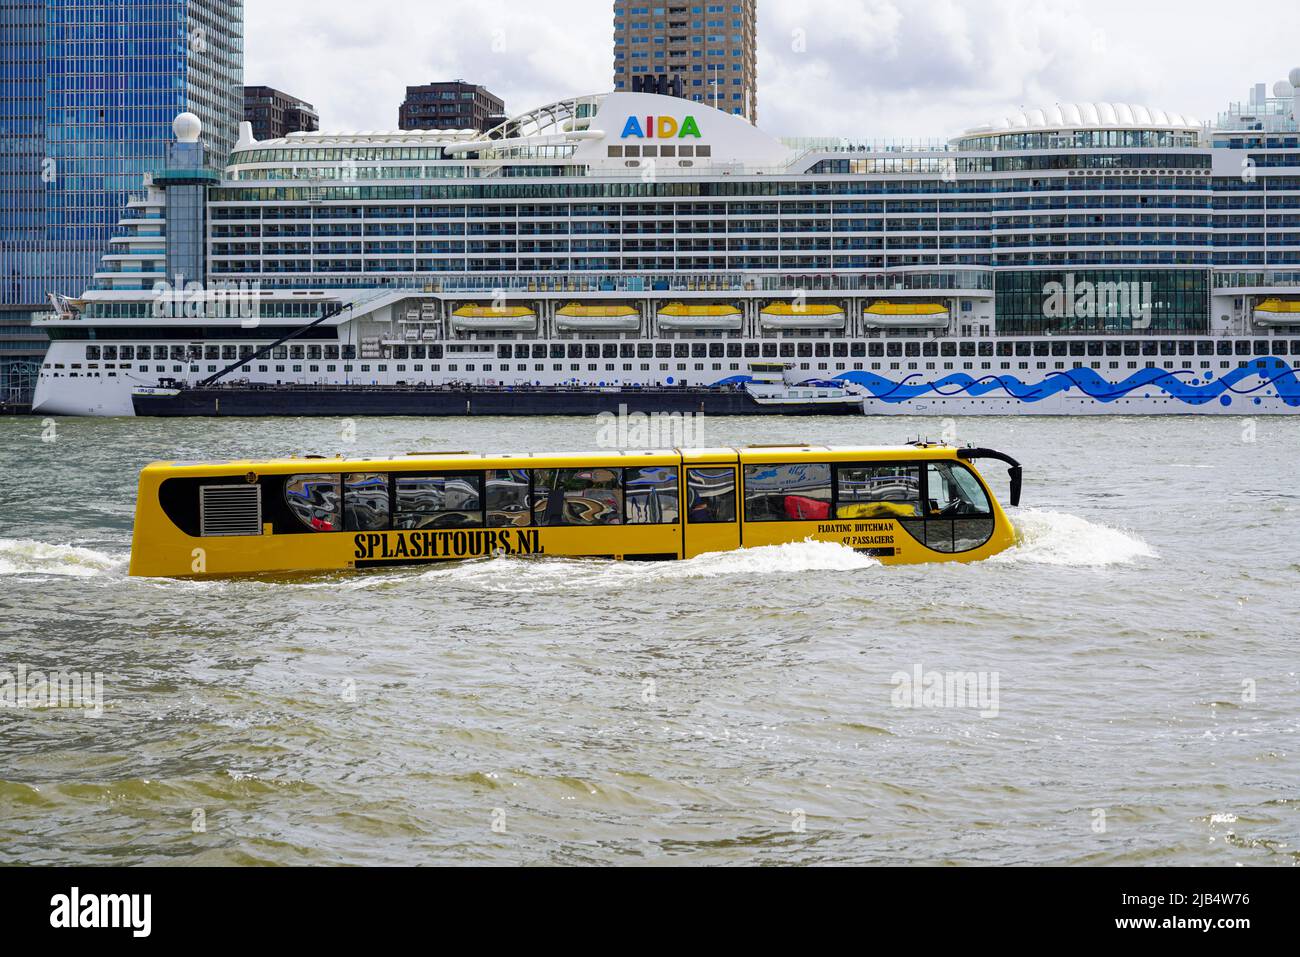 Ein Sightseeing Boot der Gesellschaft Splashtours fährt auf der Maas am Kreuzfahrtschiff AIDA prima vorbei am 26. Mai 2022, die im Rotterdamer Hafen v Stock Photo